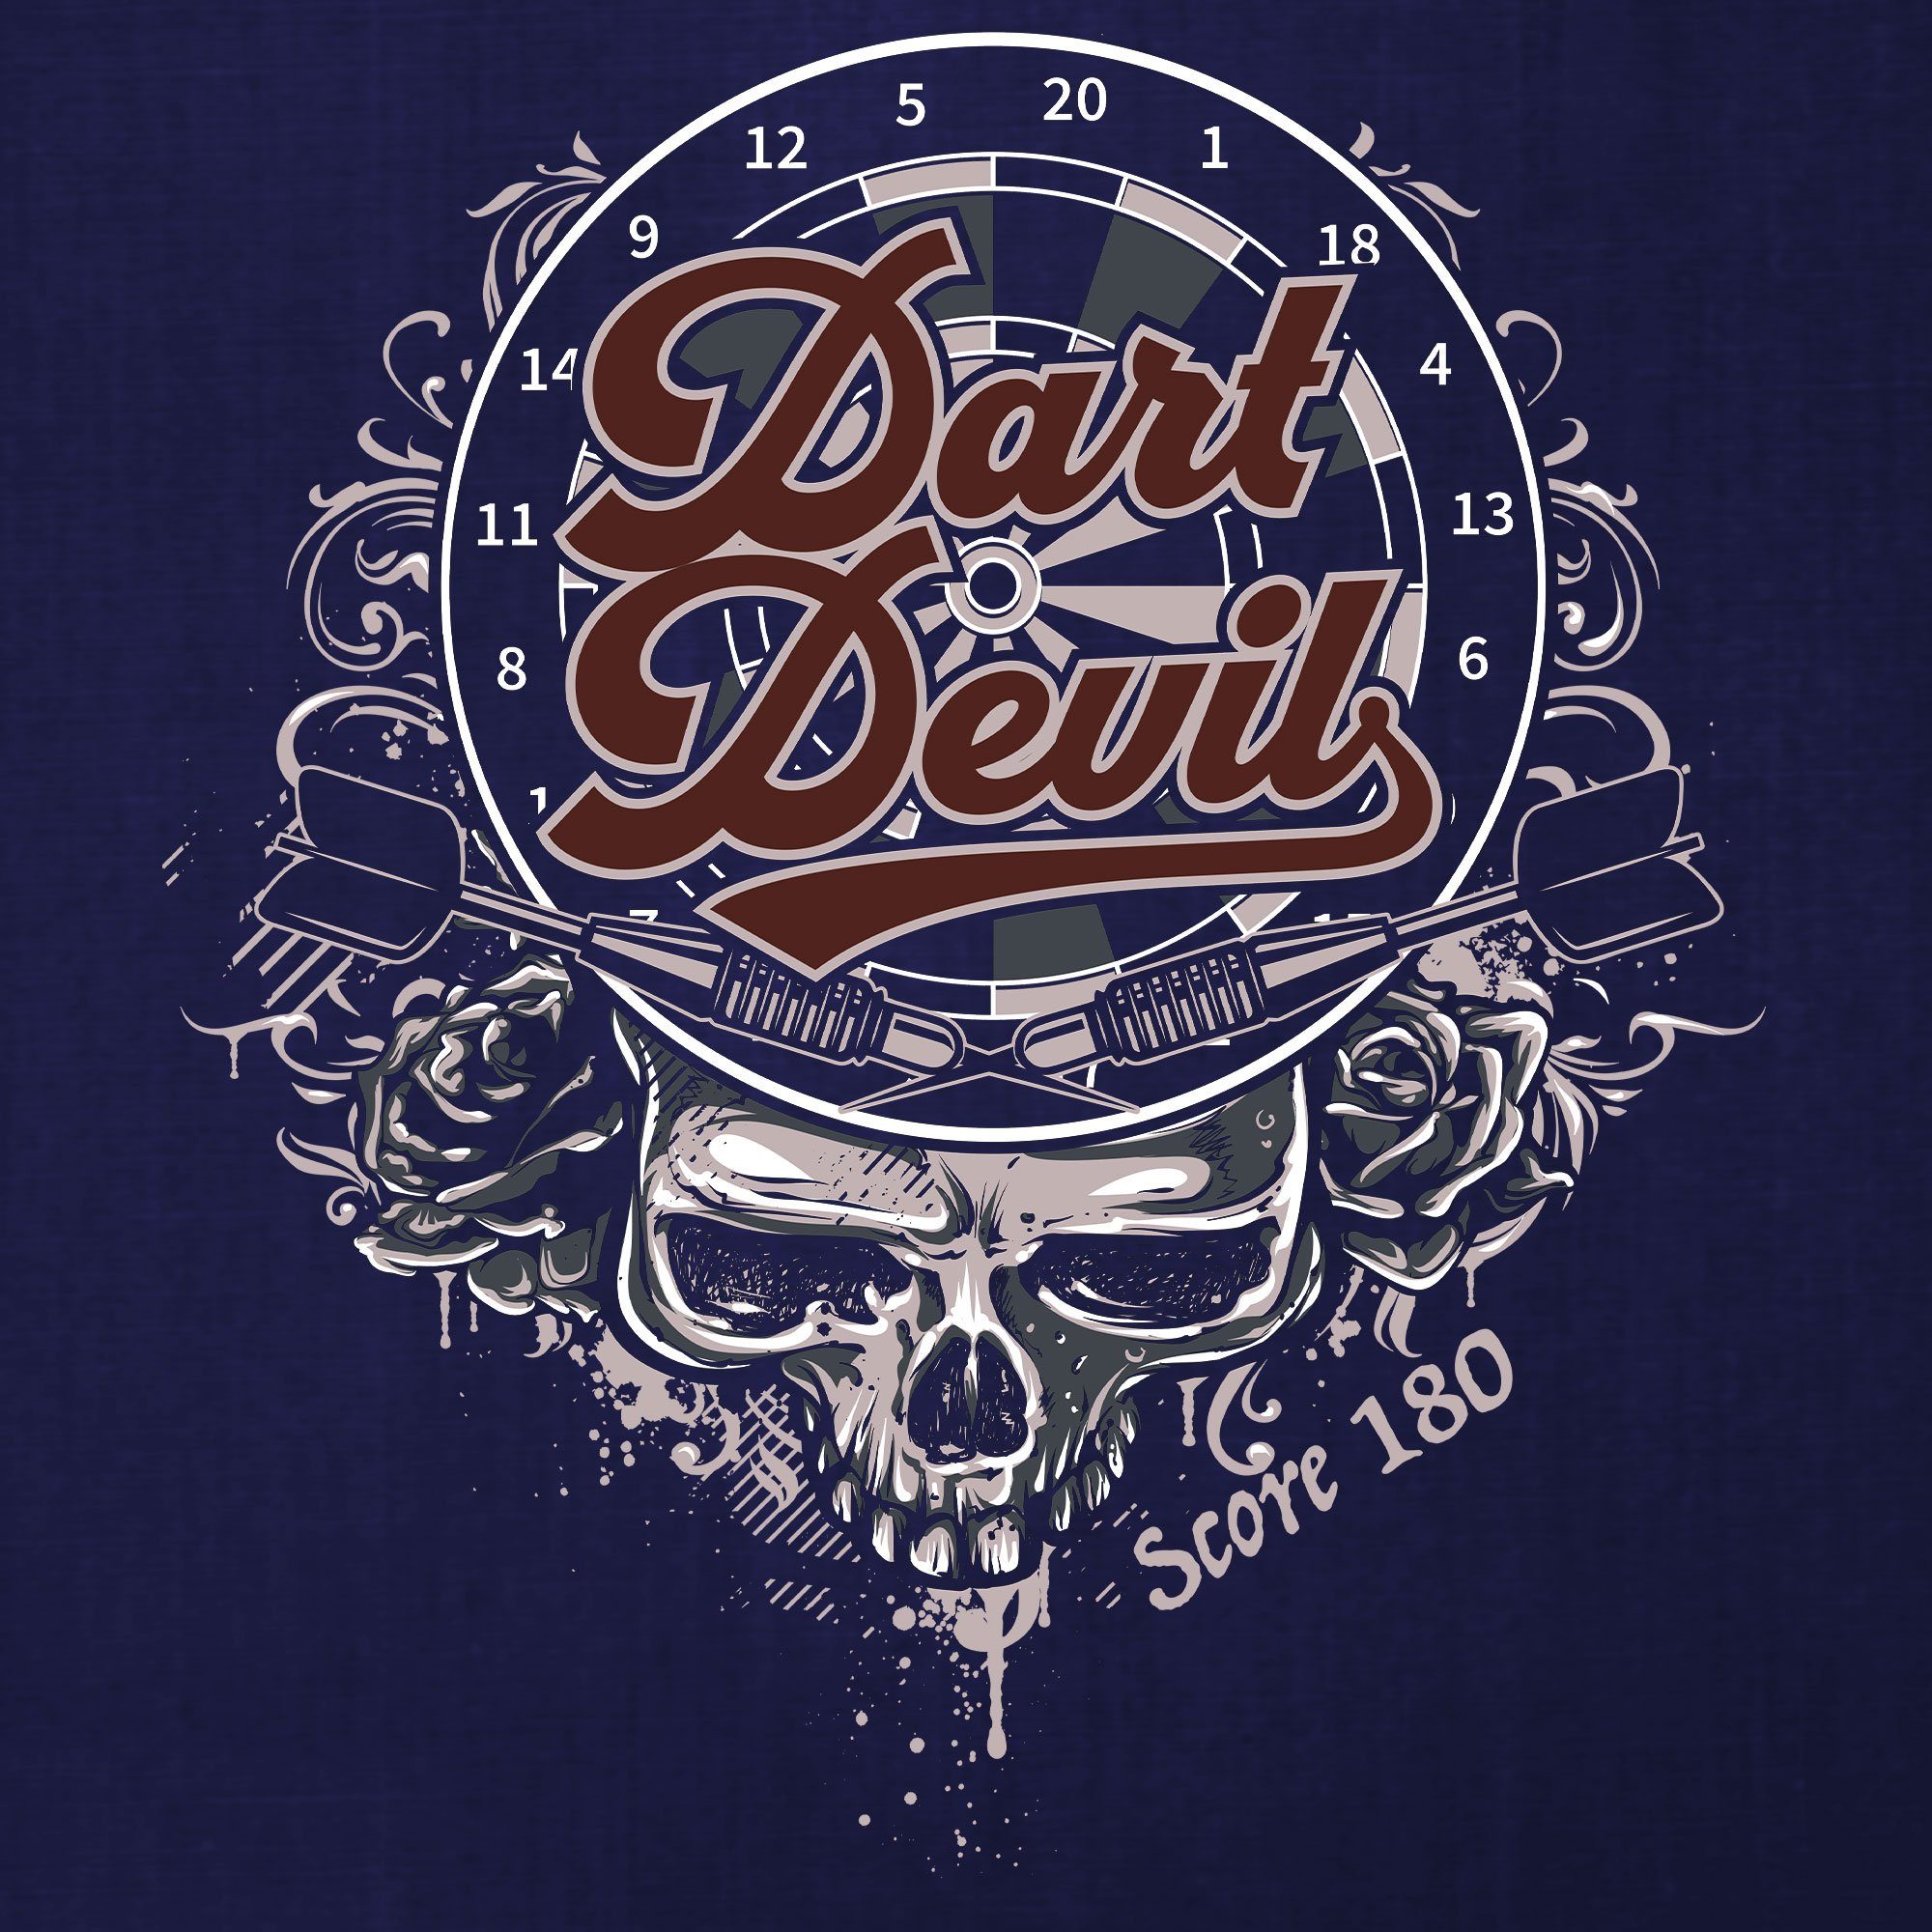 T-Shirt Dart (1-tlg) Navy Herren Blau 180 Quattro Dartscheibe Devil Dartspieler Formatee - Kurzarmshirt Dartpfeil